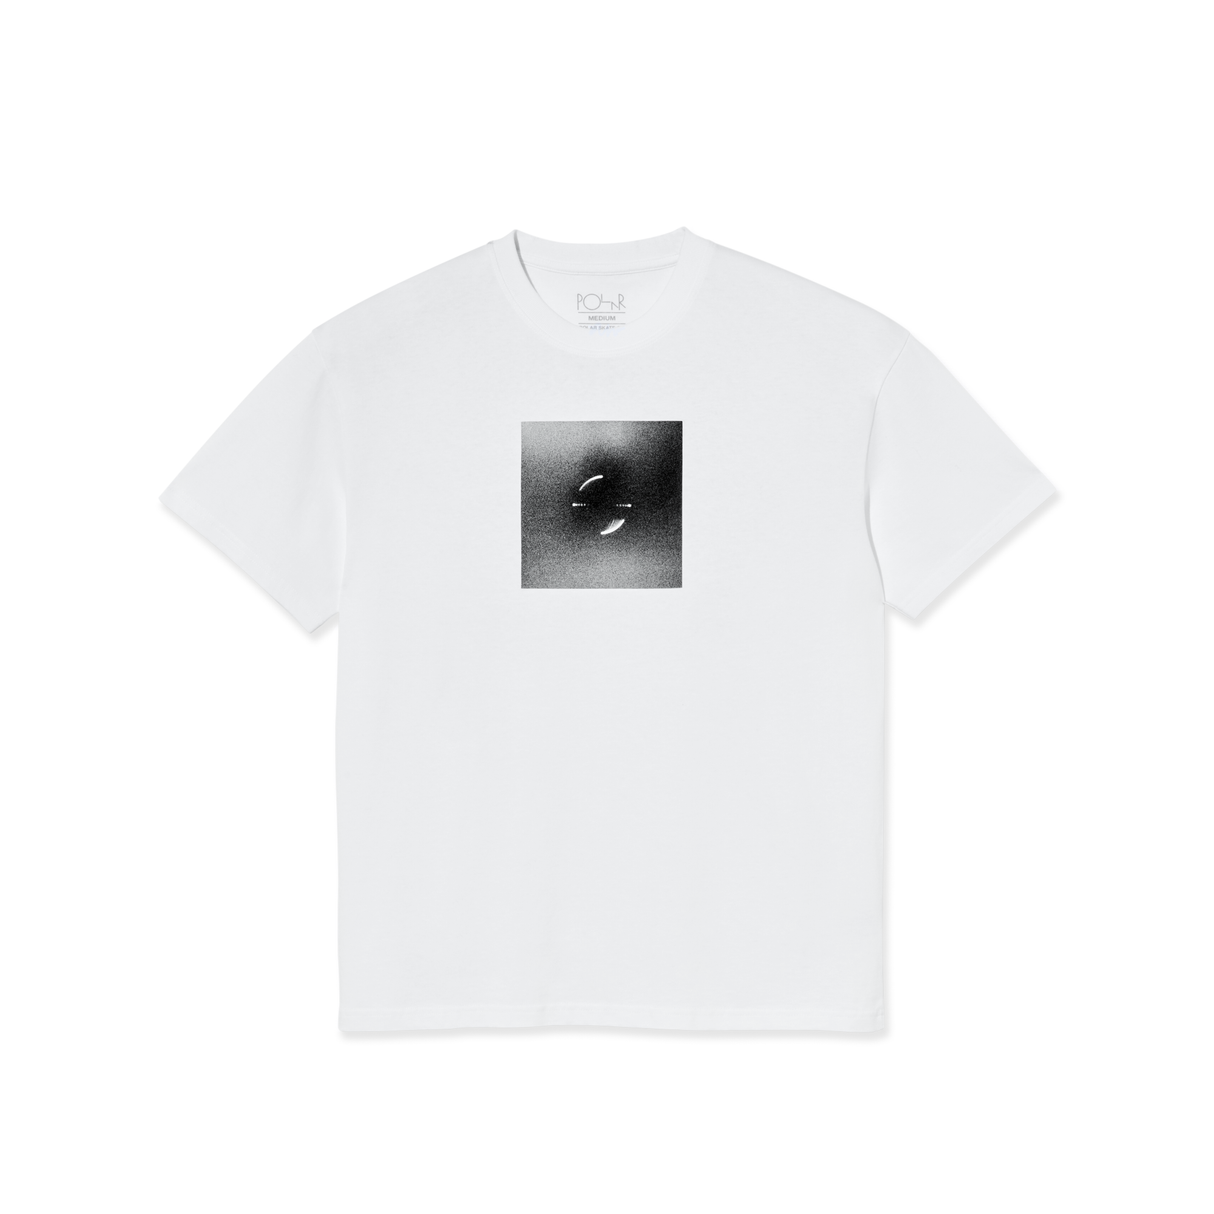 Polar Magnetic Field White Shirt